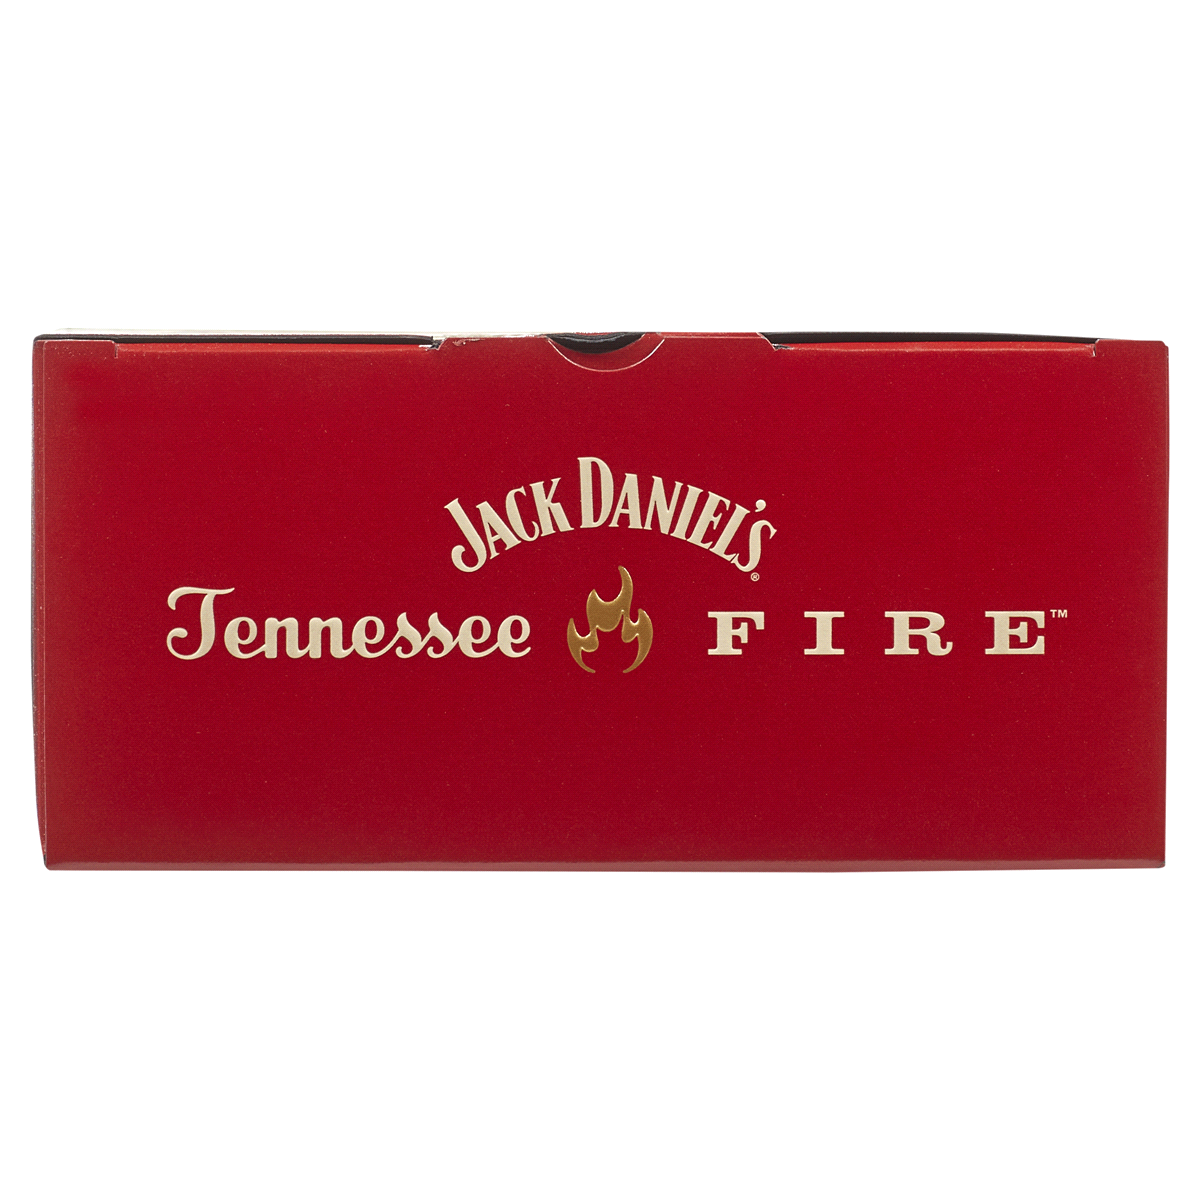 slide 24 of 29, Jack Daniel's Jack Daniels Fire Vap, 750 ml